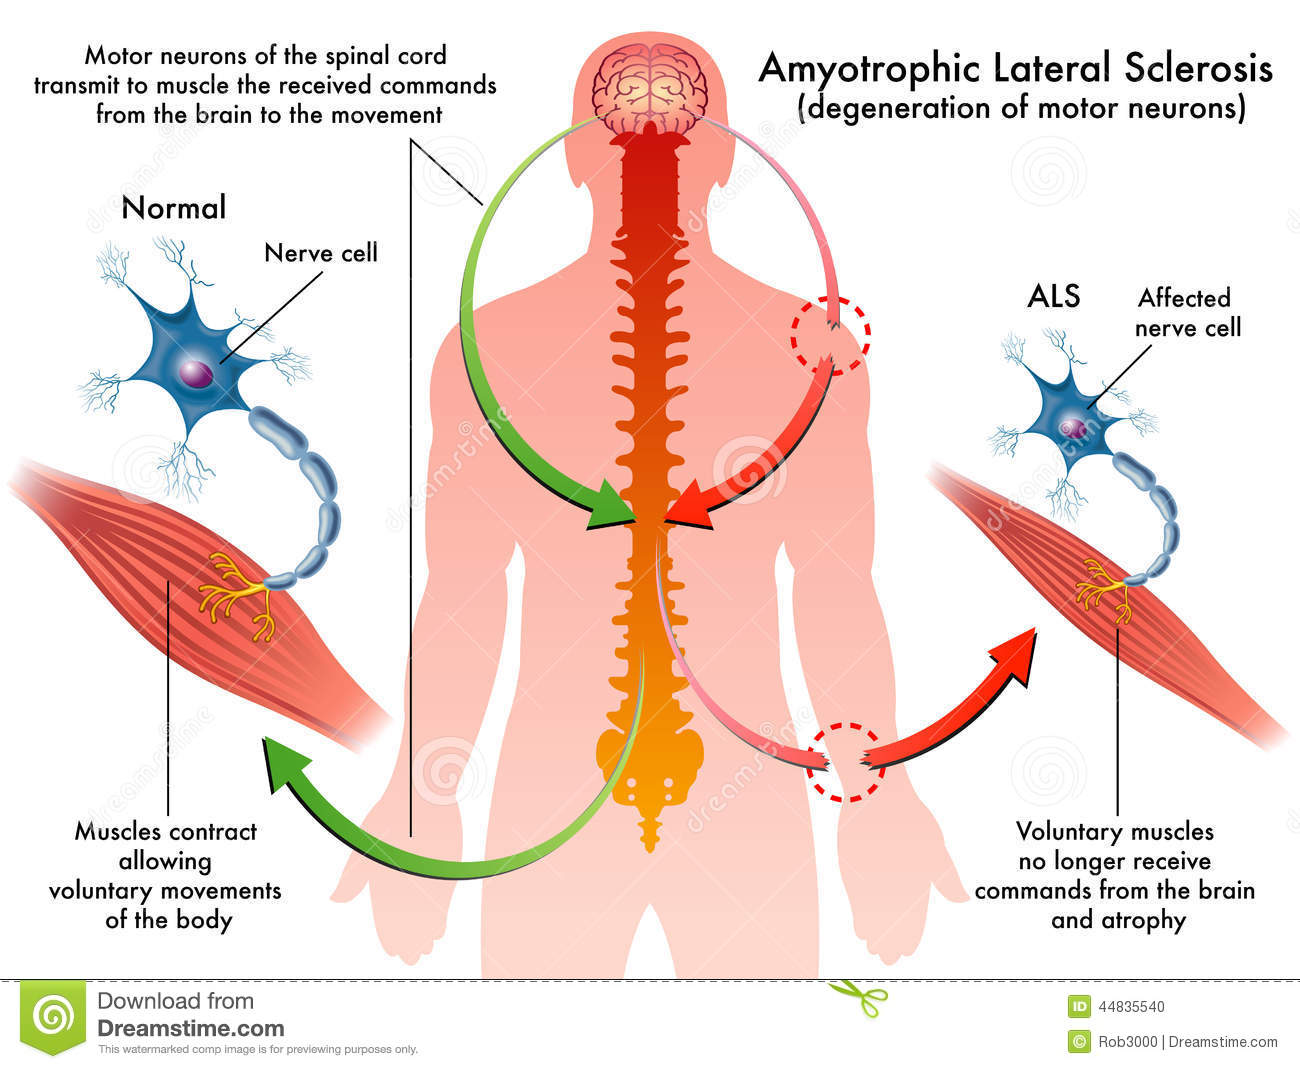  Ø¢Ù…ÙŠÙˆØªØ±ÙˆÙ�ÙŠÙƒâ€Œ Ù„Ø§ØªØ±Ø§Ù„â€Œ Ø§Ø³ÙƒÙ„Ø±ÙˆØ²: Amyotrophic lateral sclerosis (ALS Ø´Ø±Ø­ Ø¨ÛŒÙ…Ø§Ø±ÛŒ,Ù¾ÛŒØ´Ú¯ÛŒØ±ÛŒ Ùˆ ...